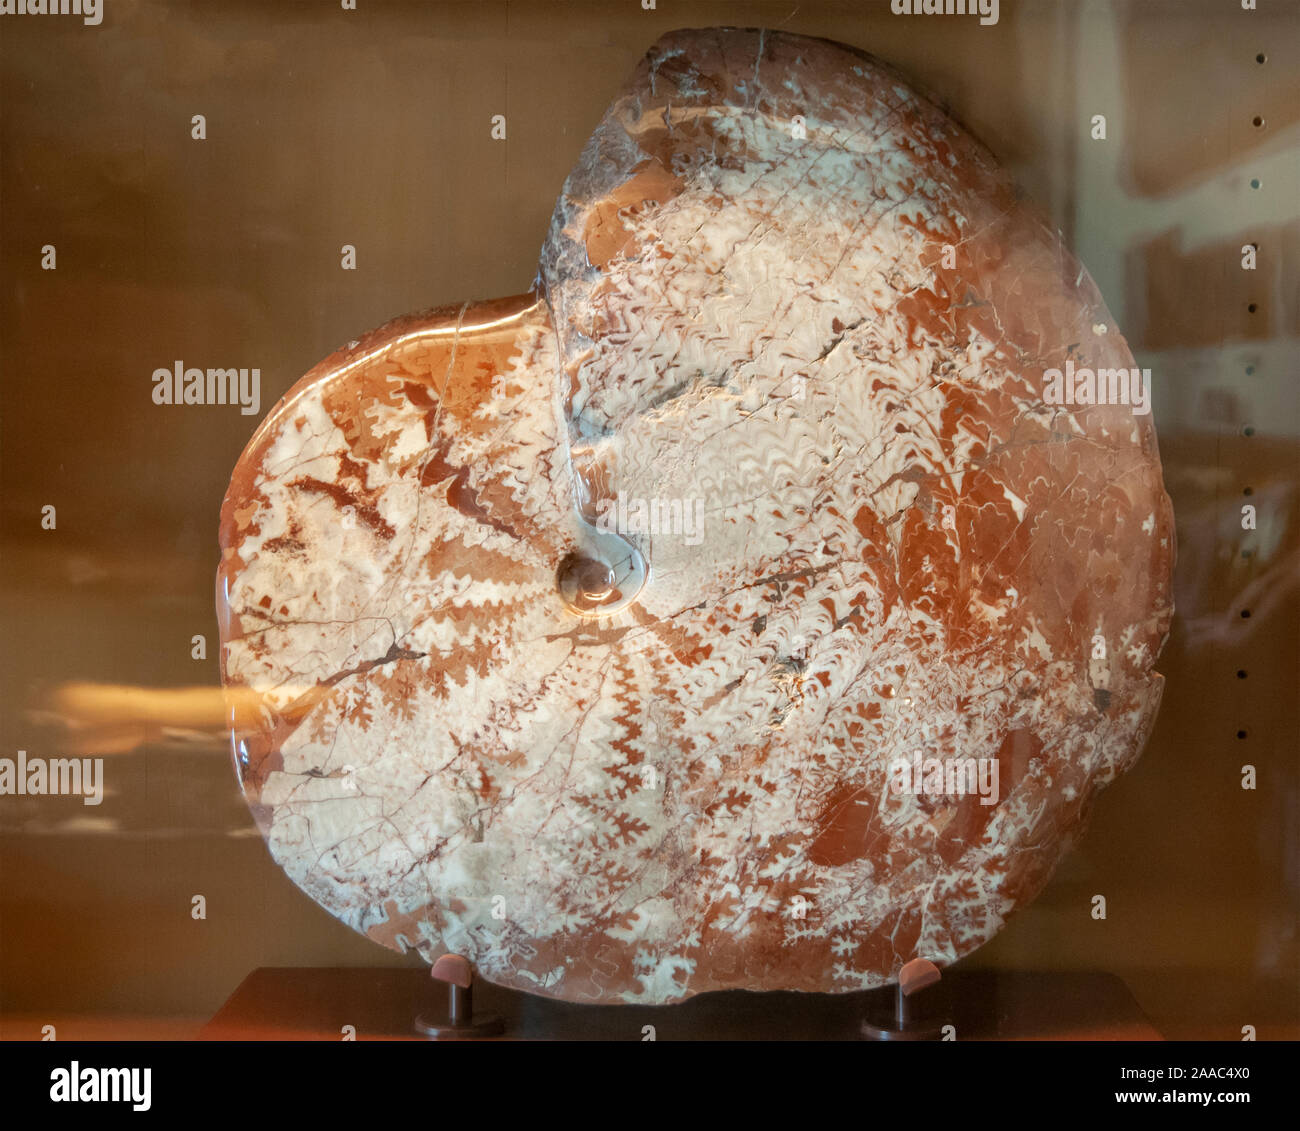 Pinacoceras metternichi (Ammonit) combustibles. Les ammonites ont disparu des invertébrés marins. Ils ont d'abord paru dans le Silurien supérieur au Dévonien précoce perio Banque D'Images